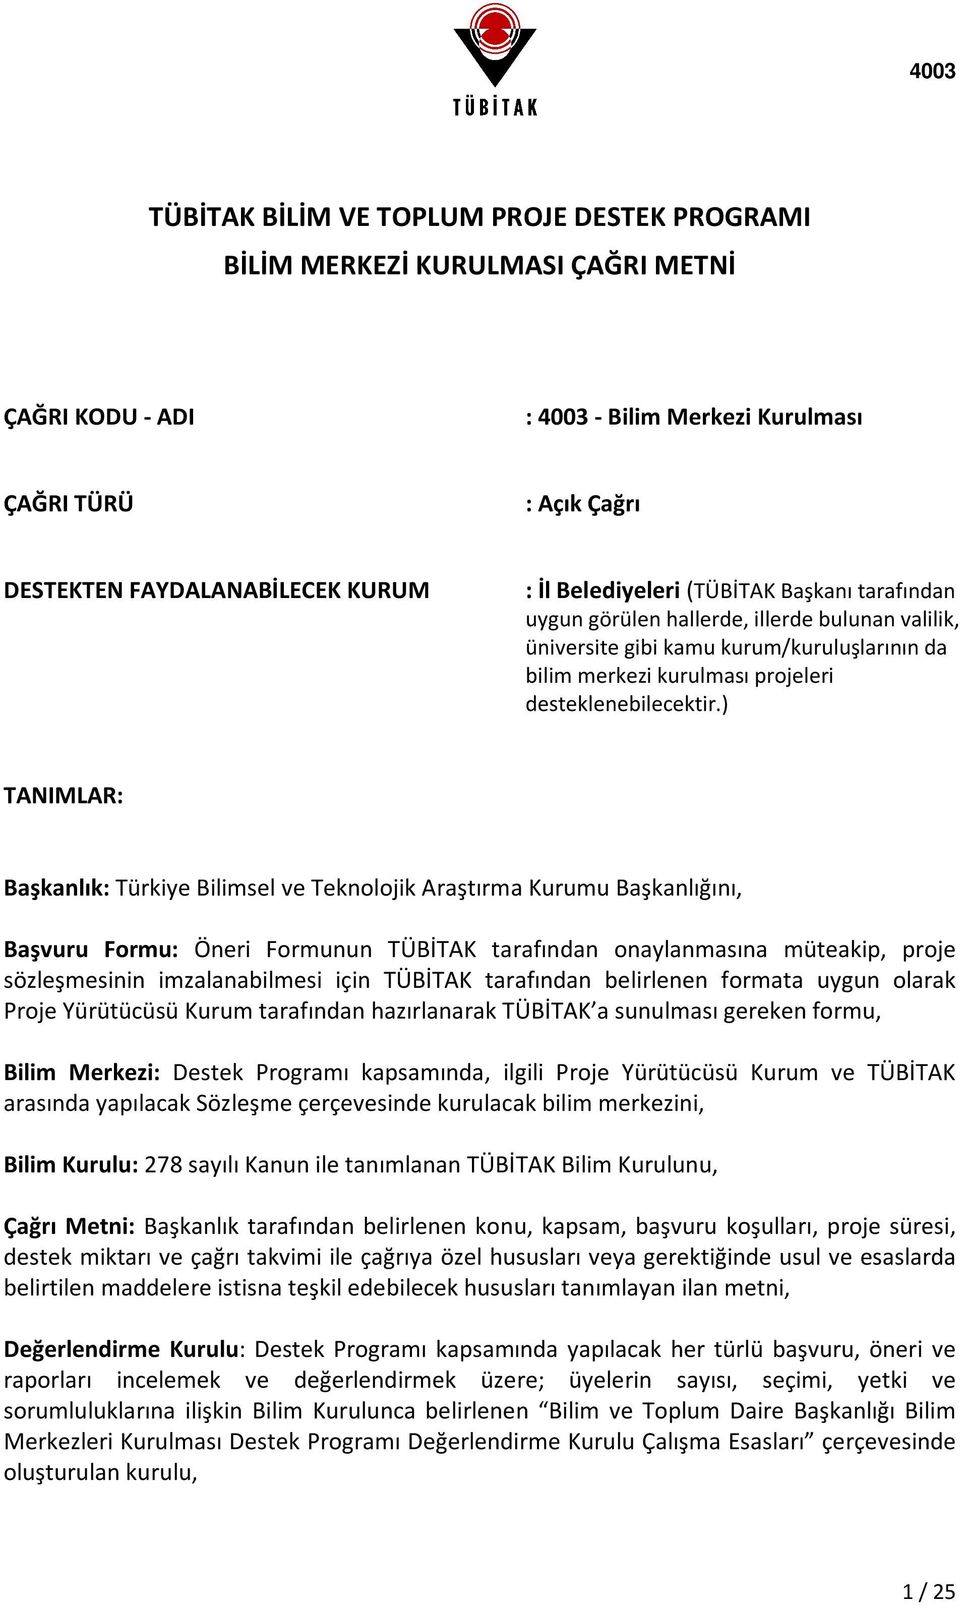 ) TANIMLAR: Başkanlık: Türkiye Bilimsel ve Teknolojik Araştırma Kurumu Başkanlığını, Başvuru Formu: Öneri Formunun TÜBİTAK tarafından onaylanmasına müteakip, proje sözleşmesinin imzalanabilmesi için